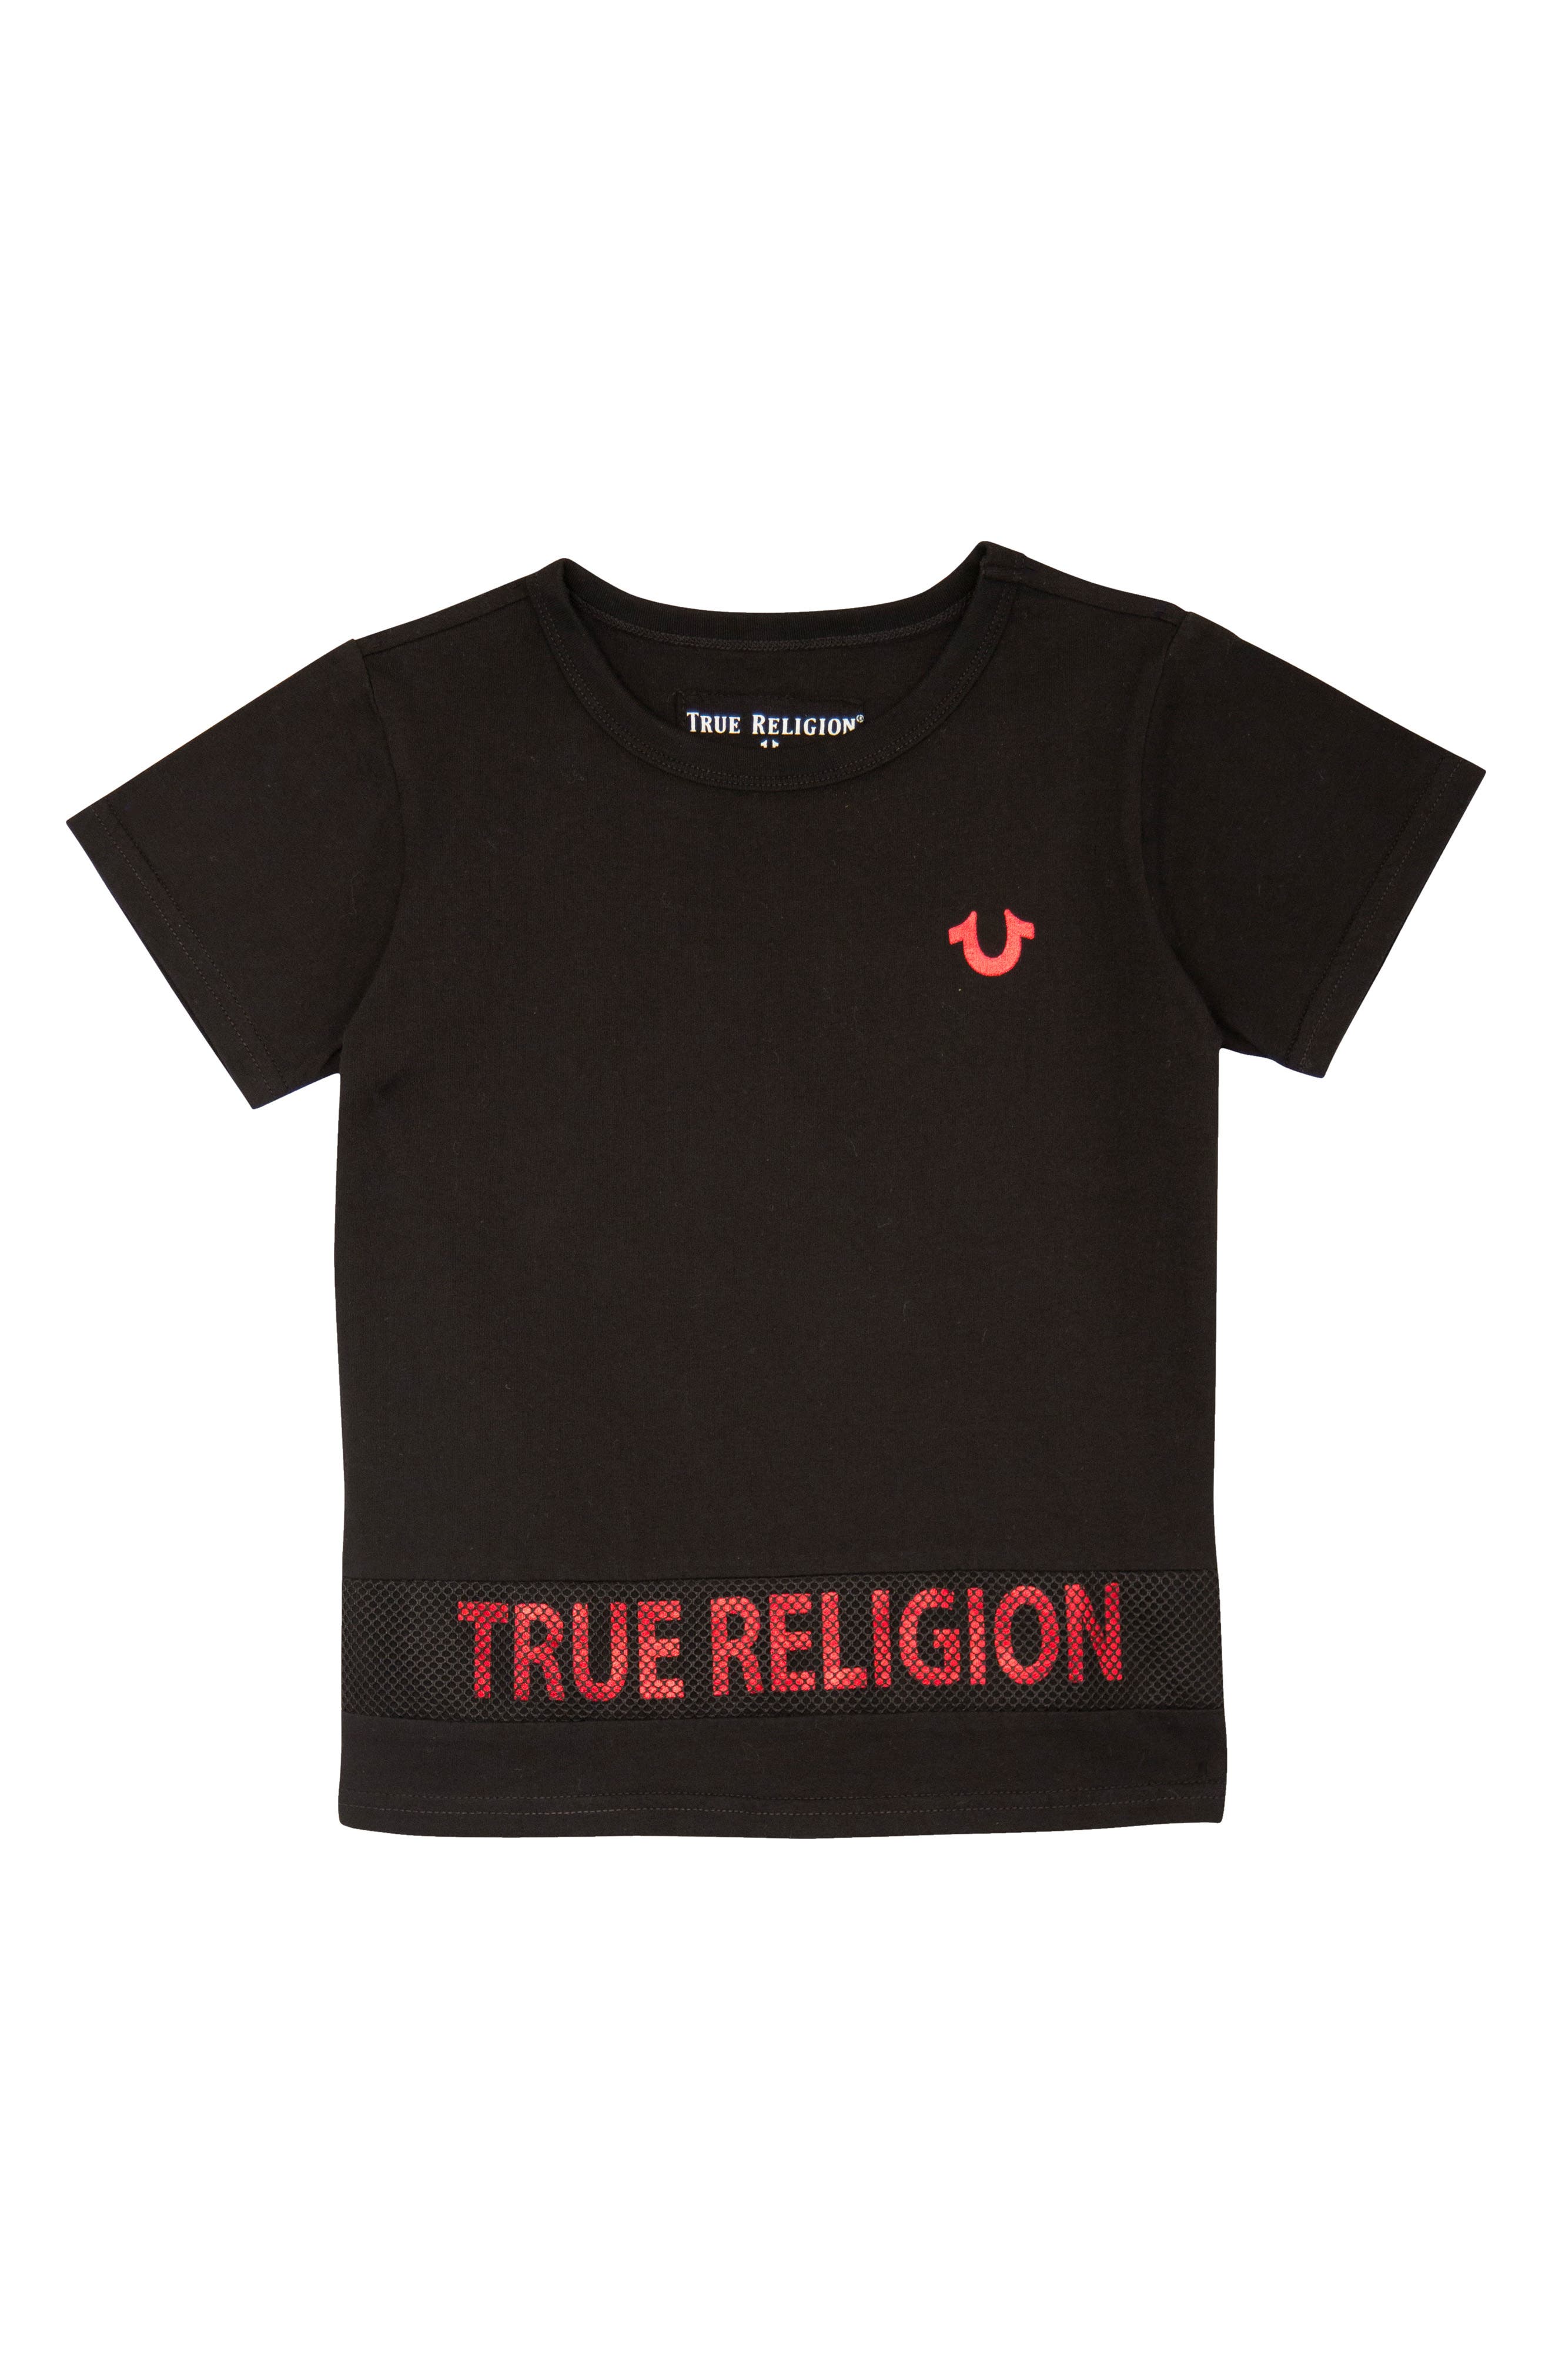 true religion clothes near me